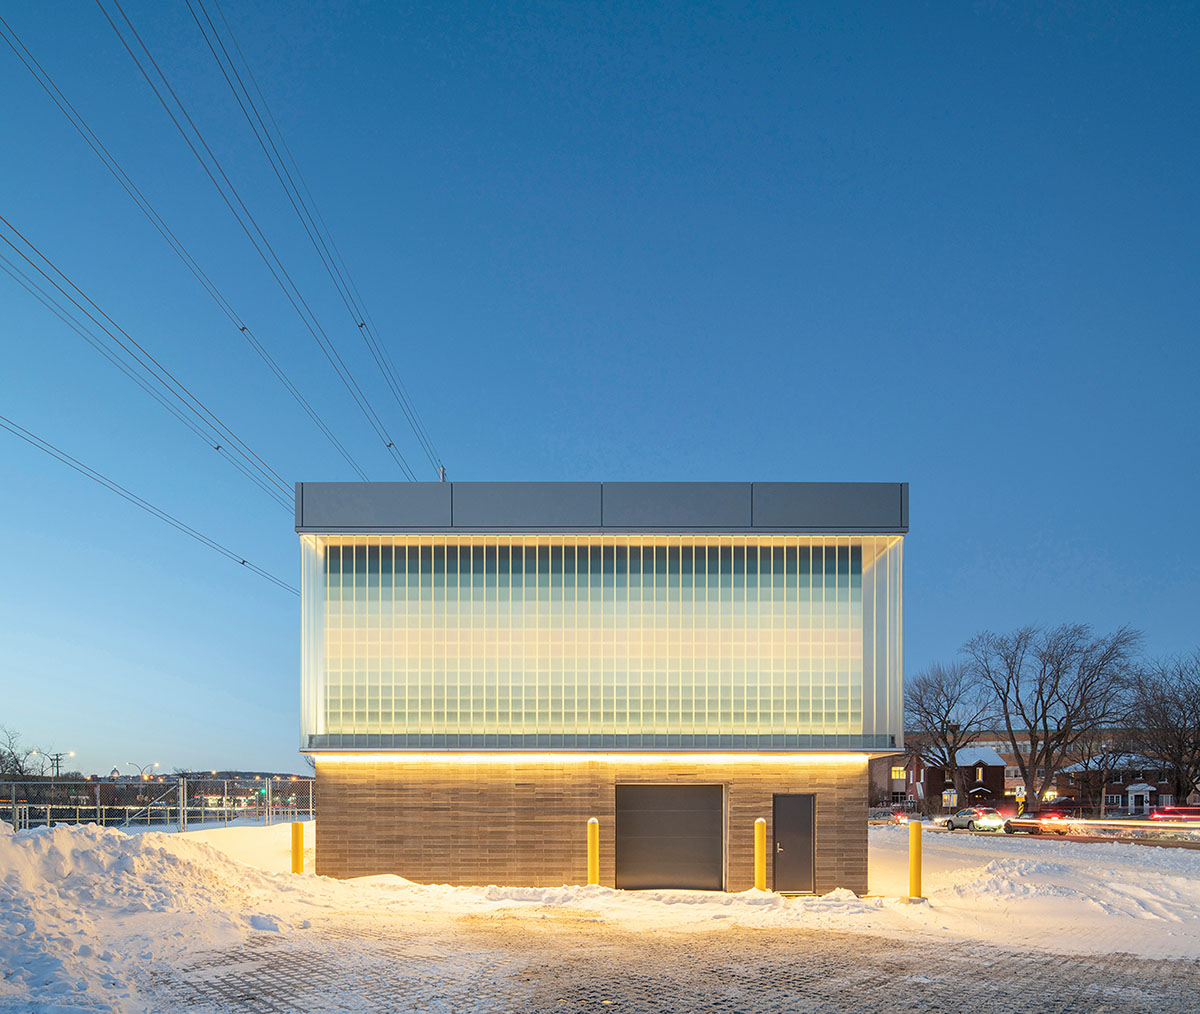 Smith Vigeant architectes проектирует водозаборное здание со стеклянным кубом и мерцающими пикселями